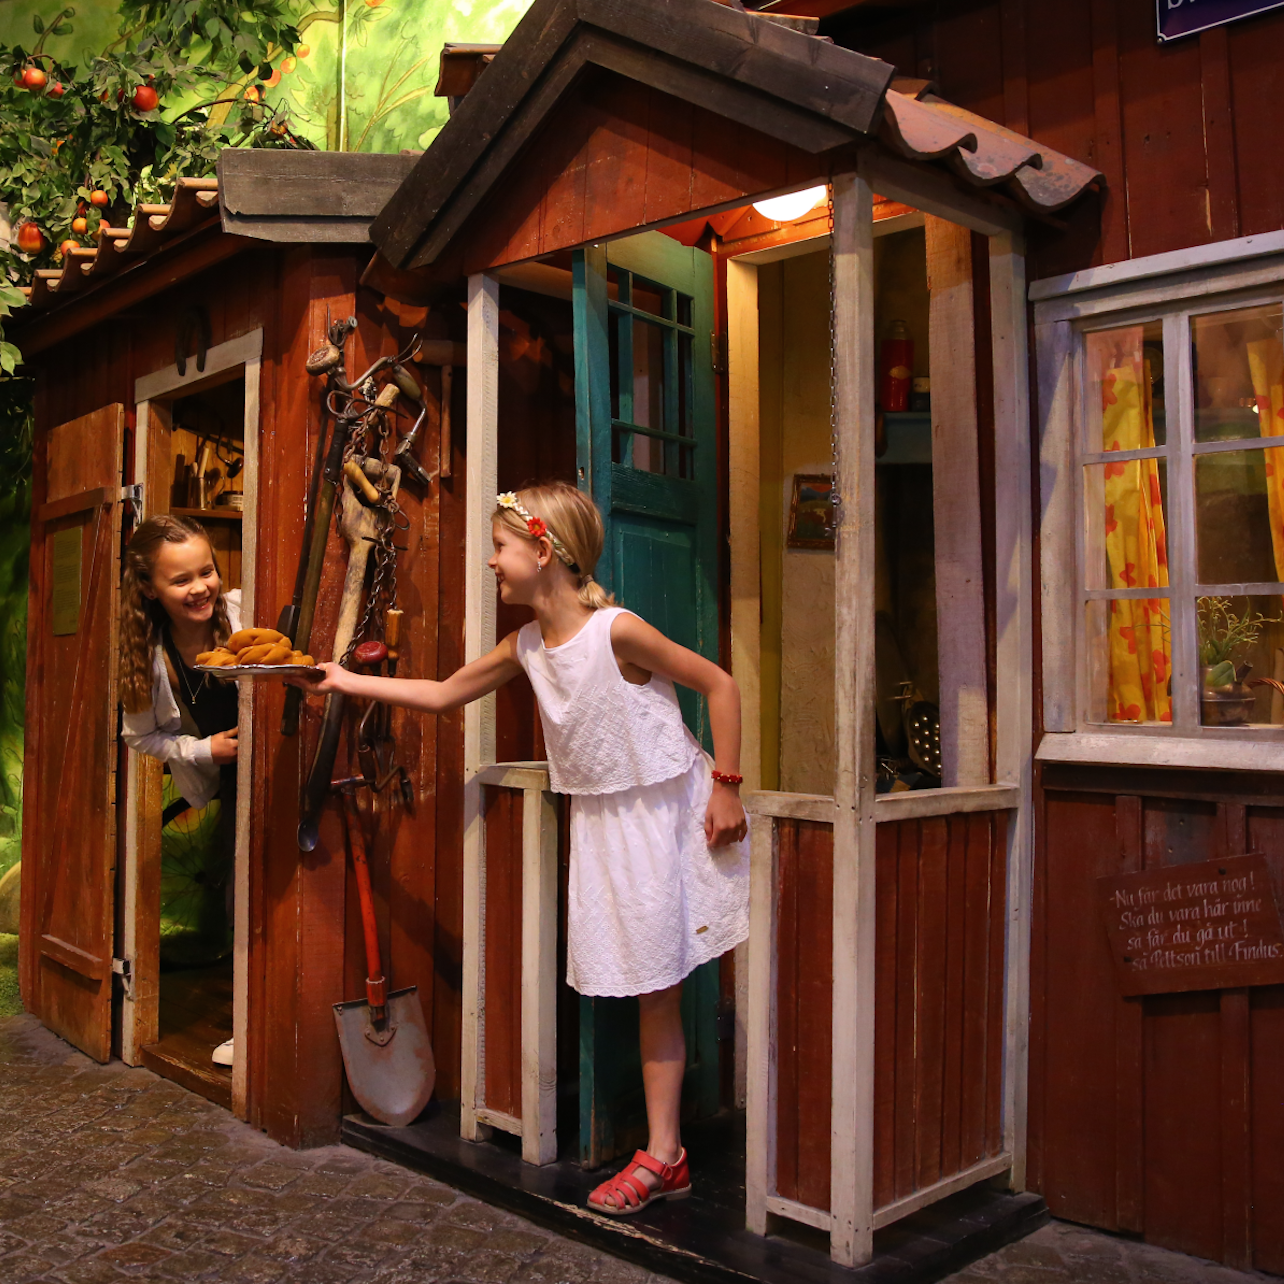 El mundo de hadas de Astrid Lindgrens: Junibacken - Alojamientos en Estocolmo